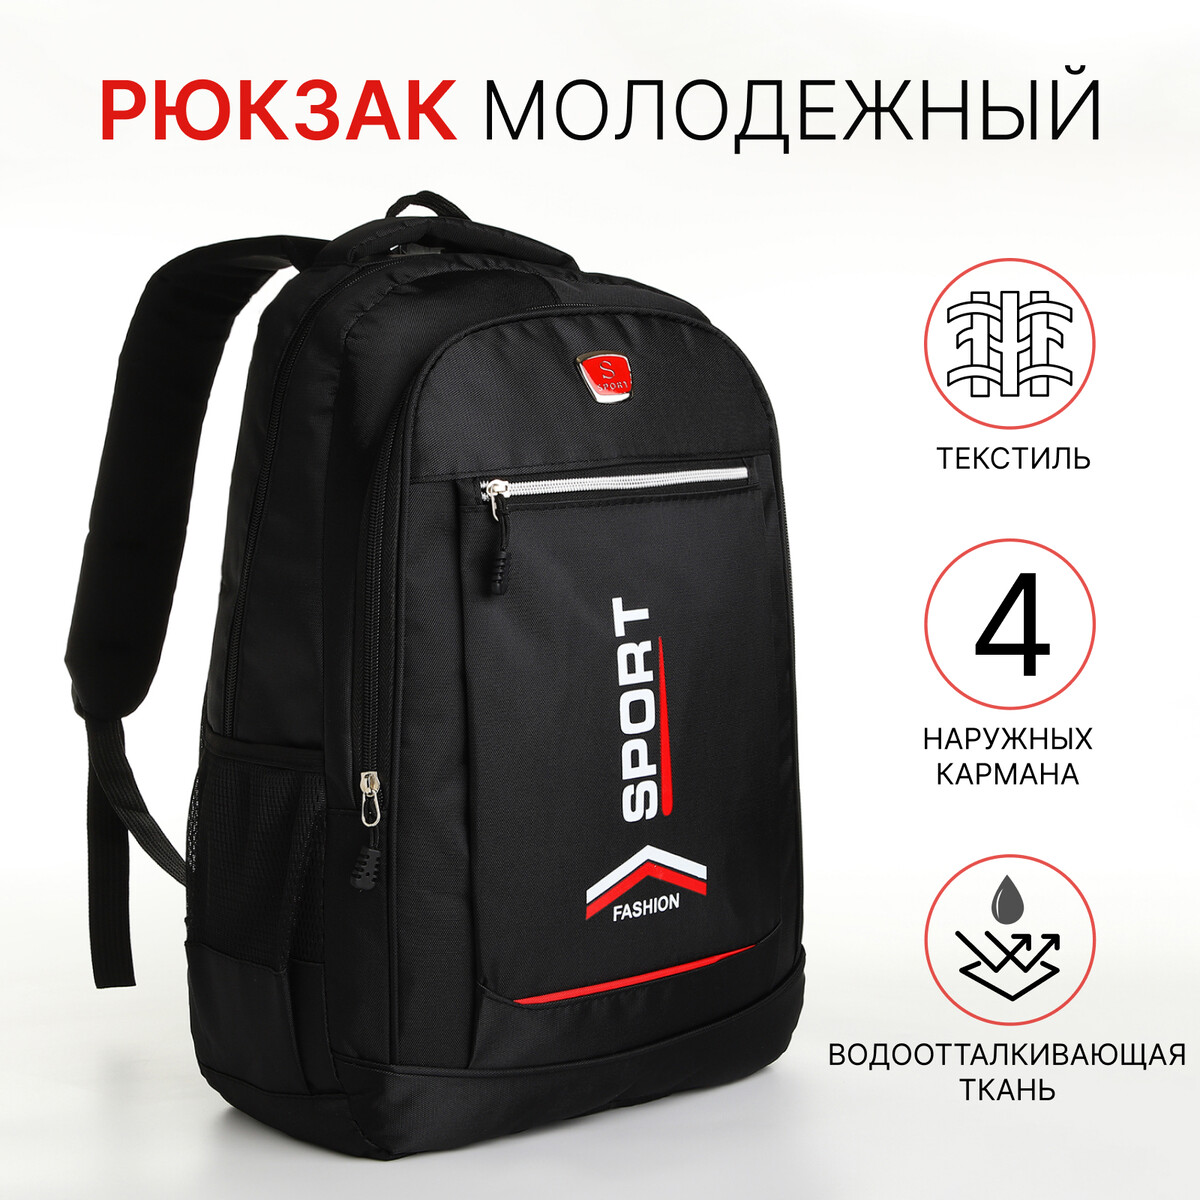 Рюкзак молодежный на молнии, 4 кармана, цвет черный/красный рюкзак hike pack 22 красный